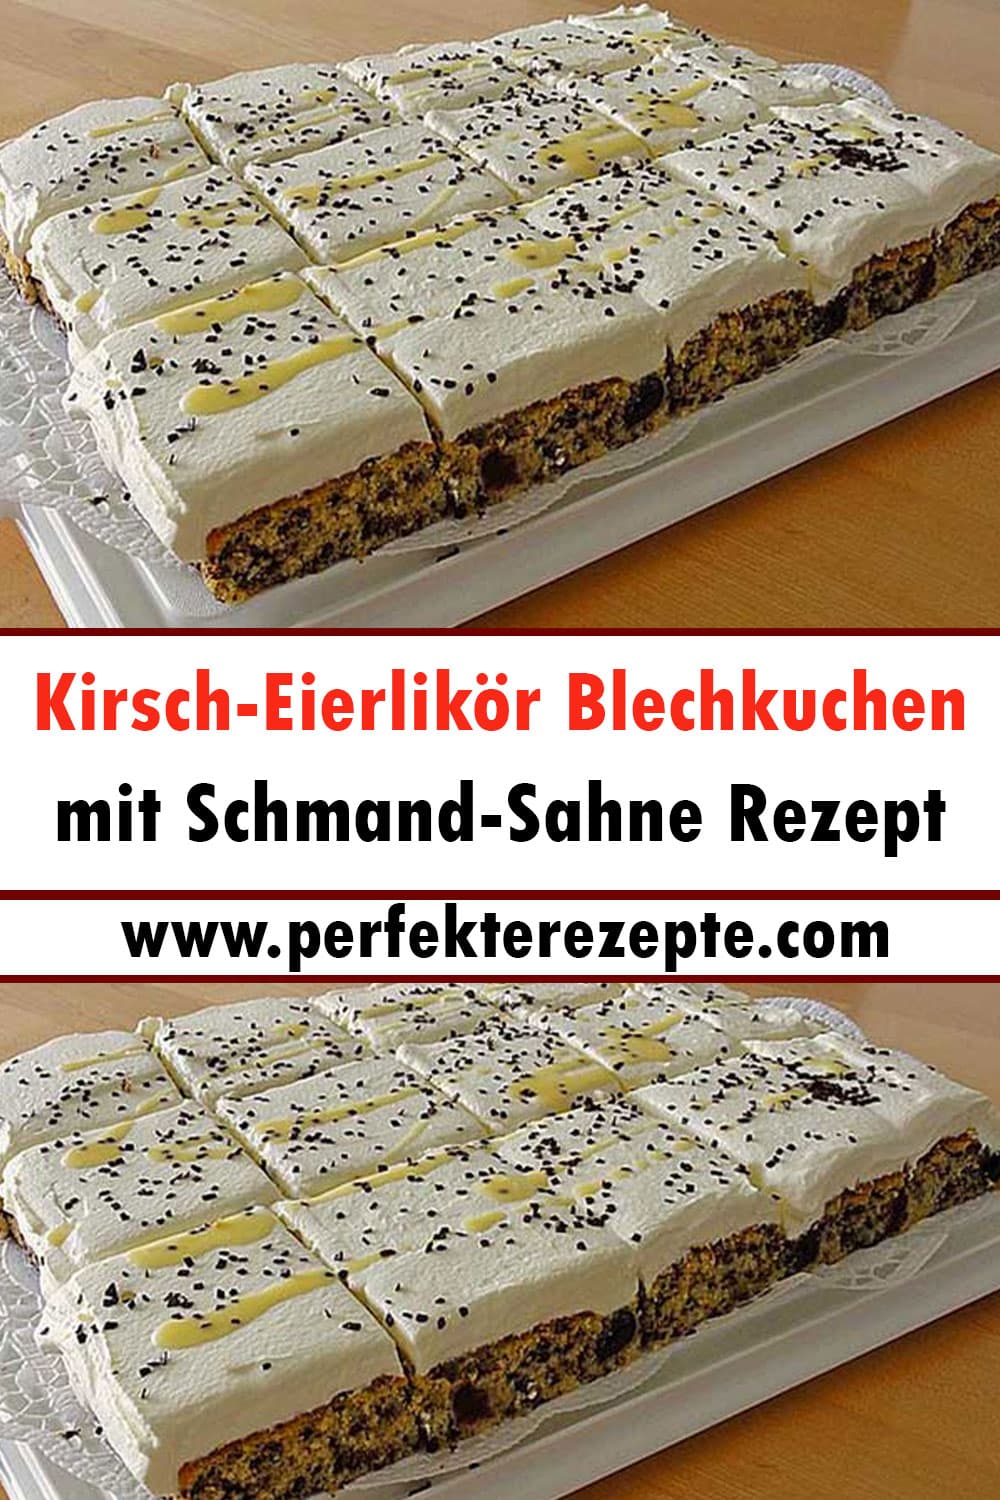 Lecker Kirsch-Eierlikör-Blechkuchen mit Schmand-Sahne Rezept